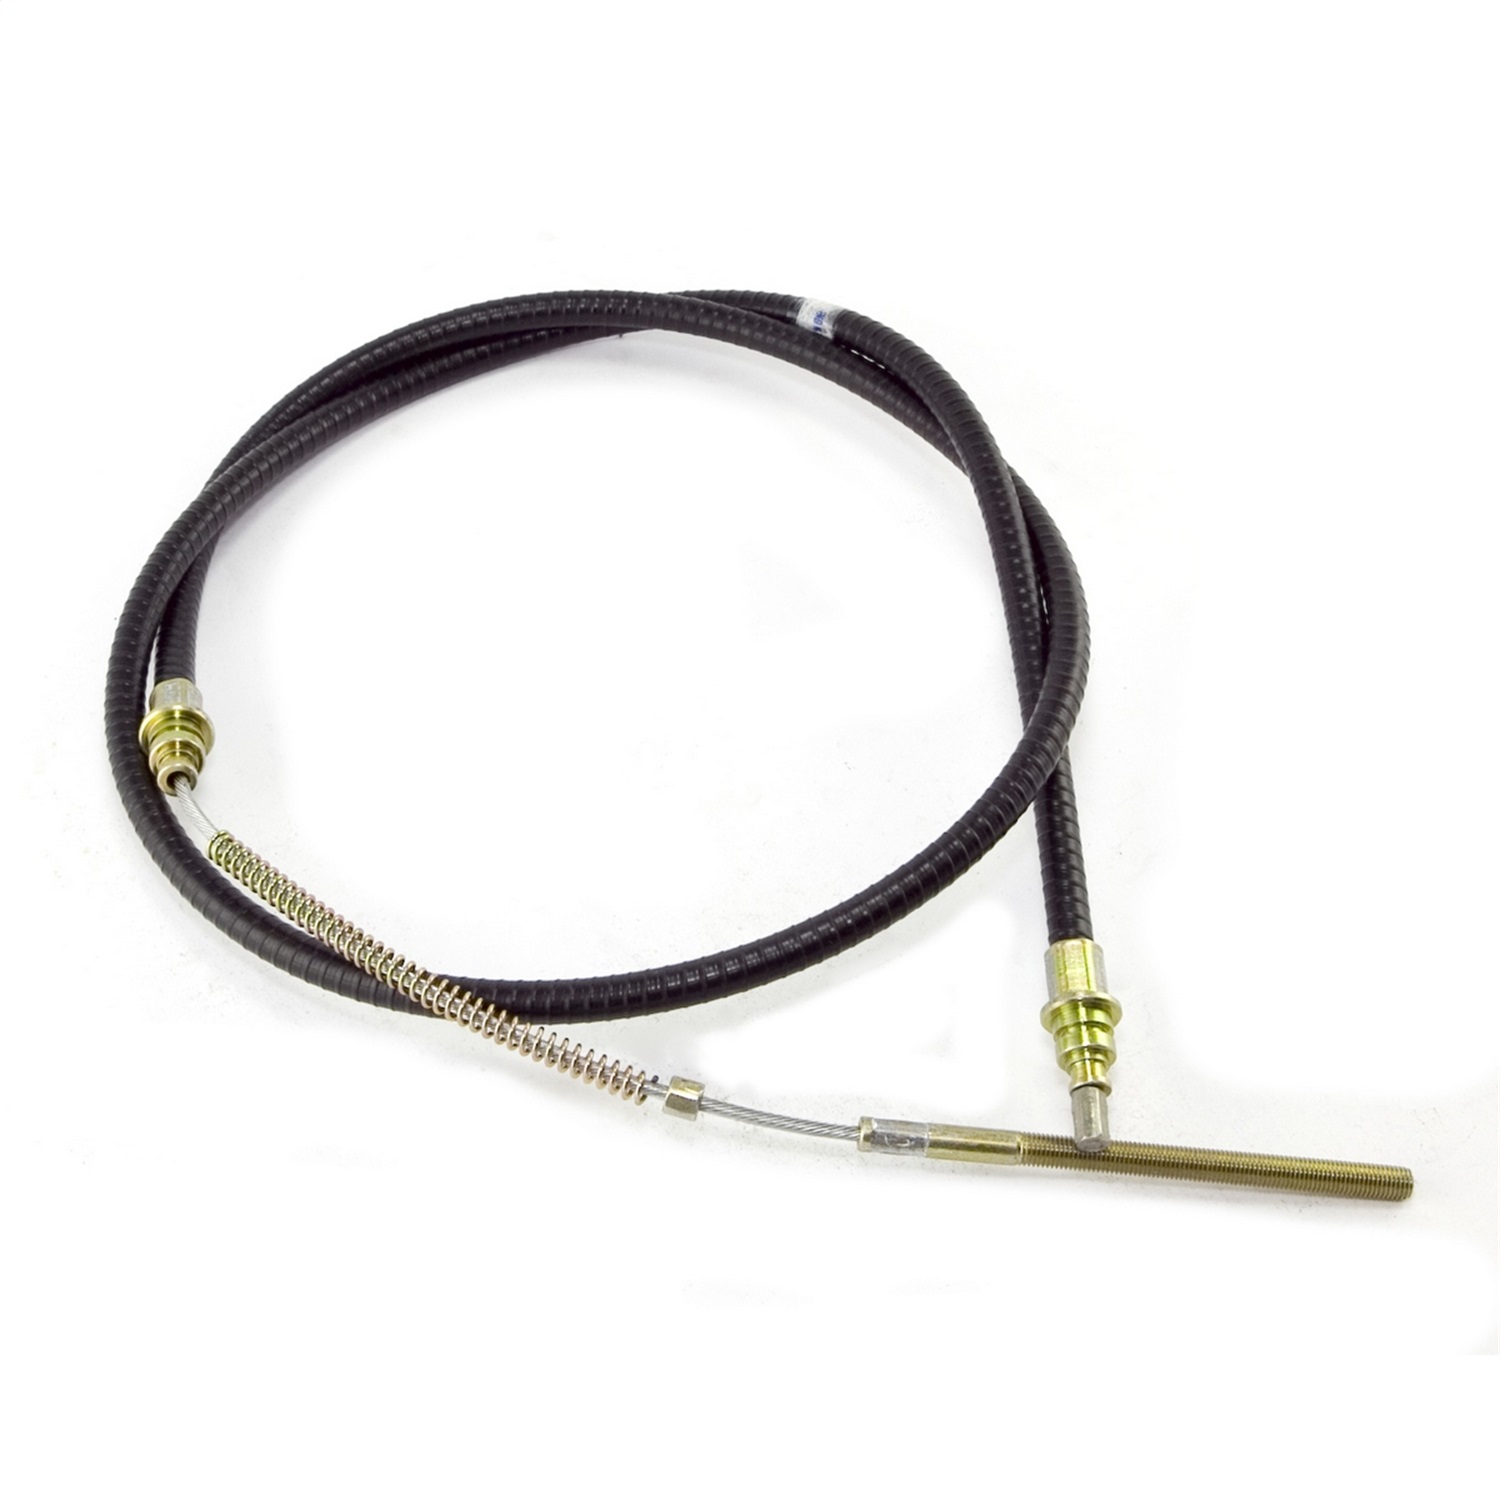 Omix-Ada Omix-Ada 16730.04 Emergency Brake Cable Fits 72-75 CJ5 CJ6